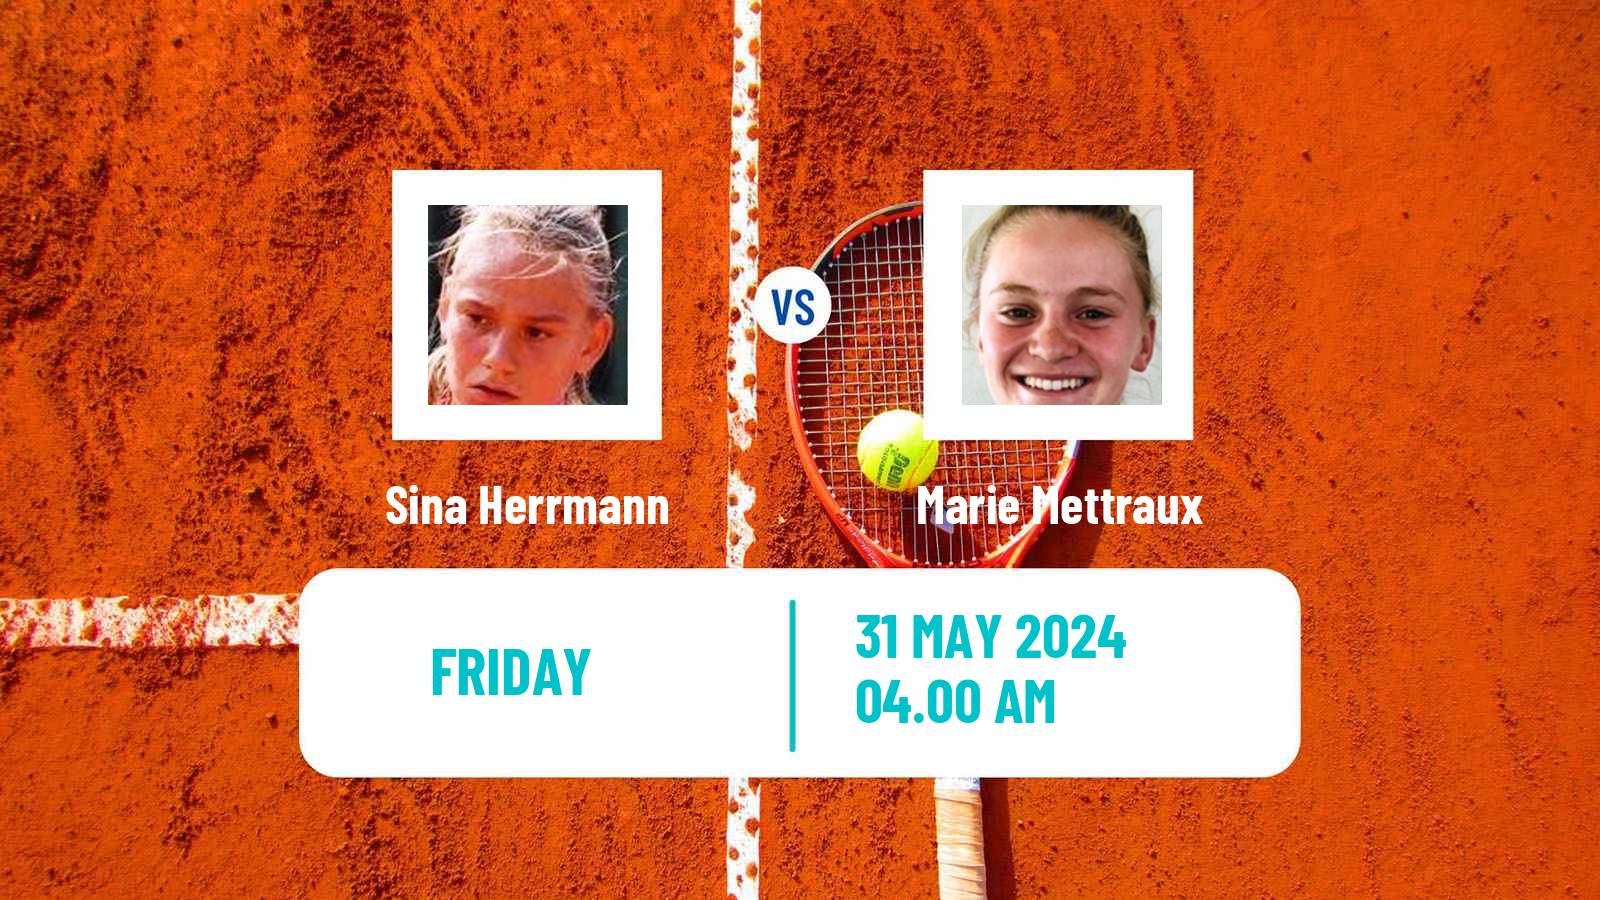 Tennis ITF W15 Bol 2 Women Sina Herrmann - Marie Mettraux